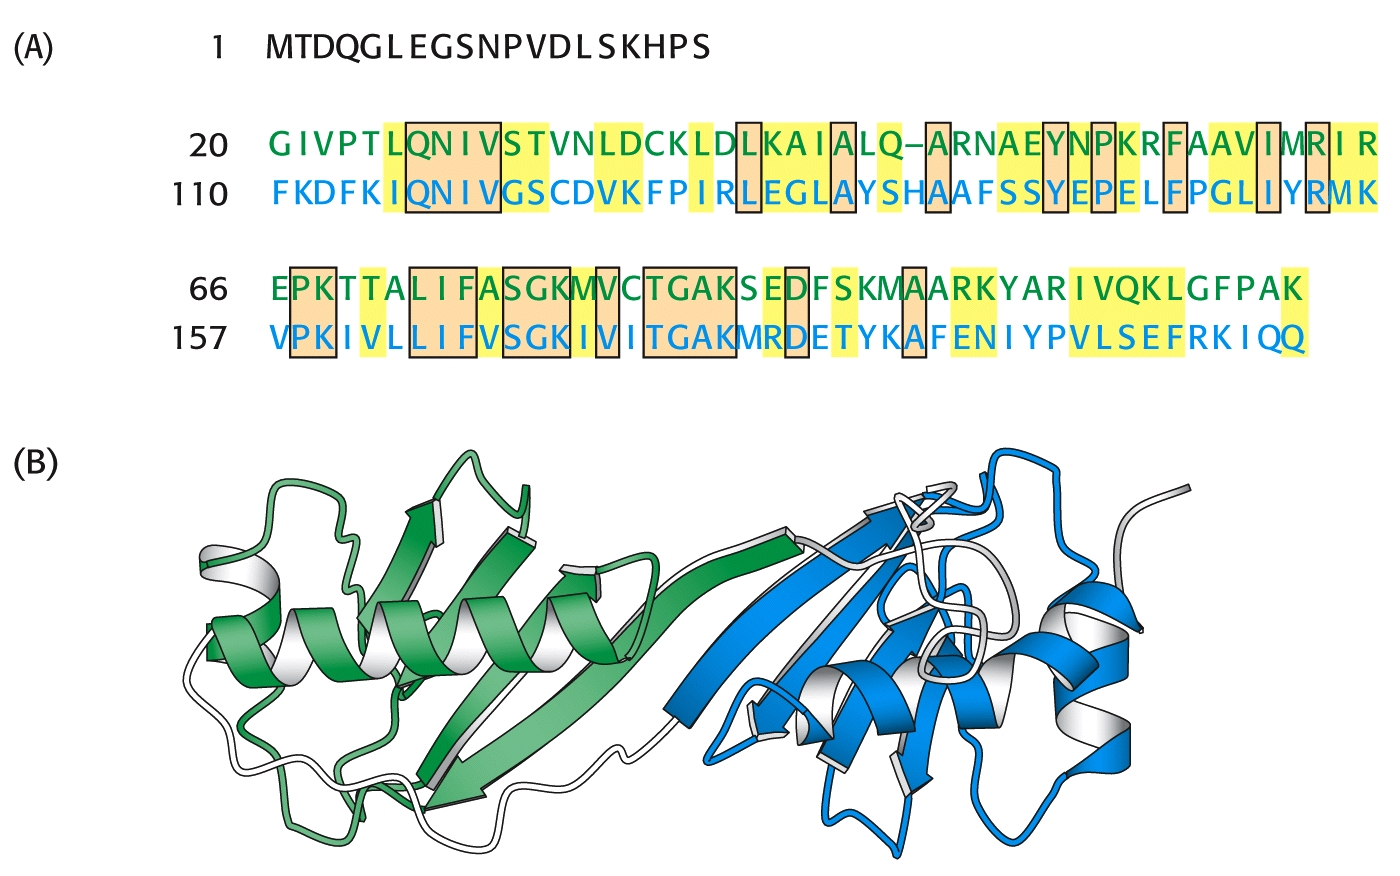 Αντιστοίχιση αλληλουχίας Εσωτερικών Επαναλήψεων (Α) Αντιστοίχιση των αλληλουχιών δύο επαναλήψεων της πρωτεΐνης η οποία προσδένεται στο πλαίσιο ΤΑΤΑ.